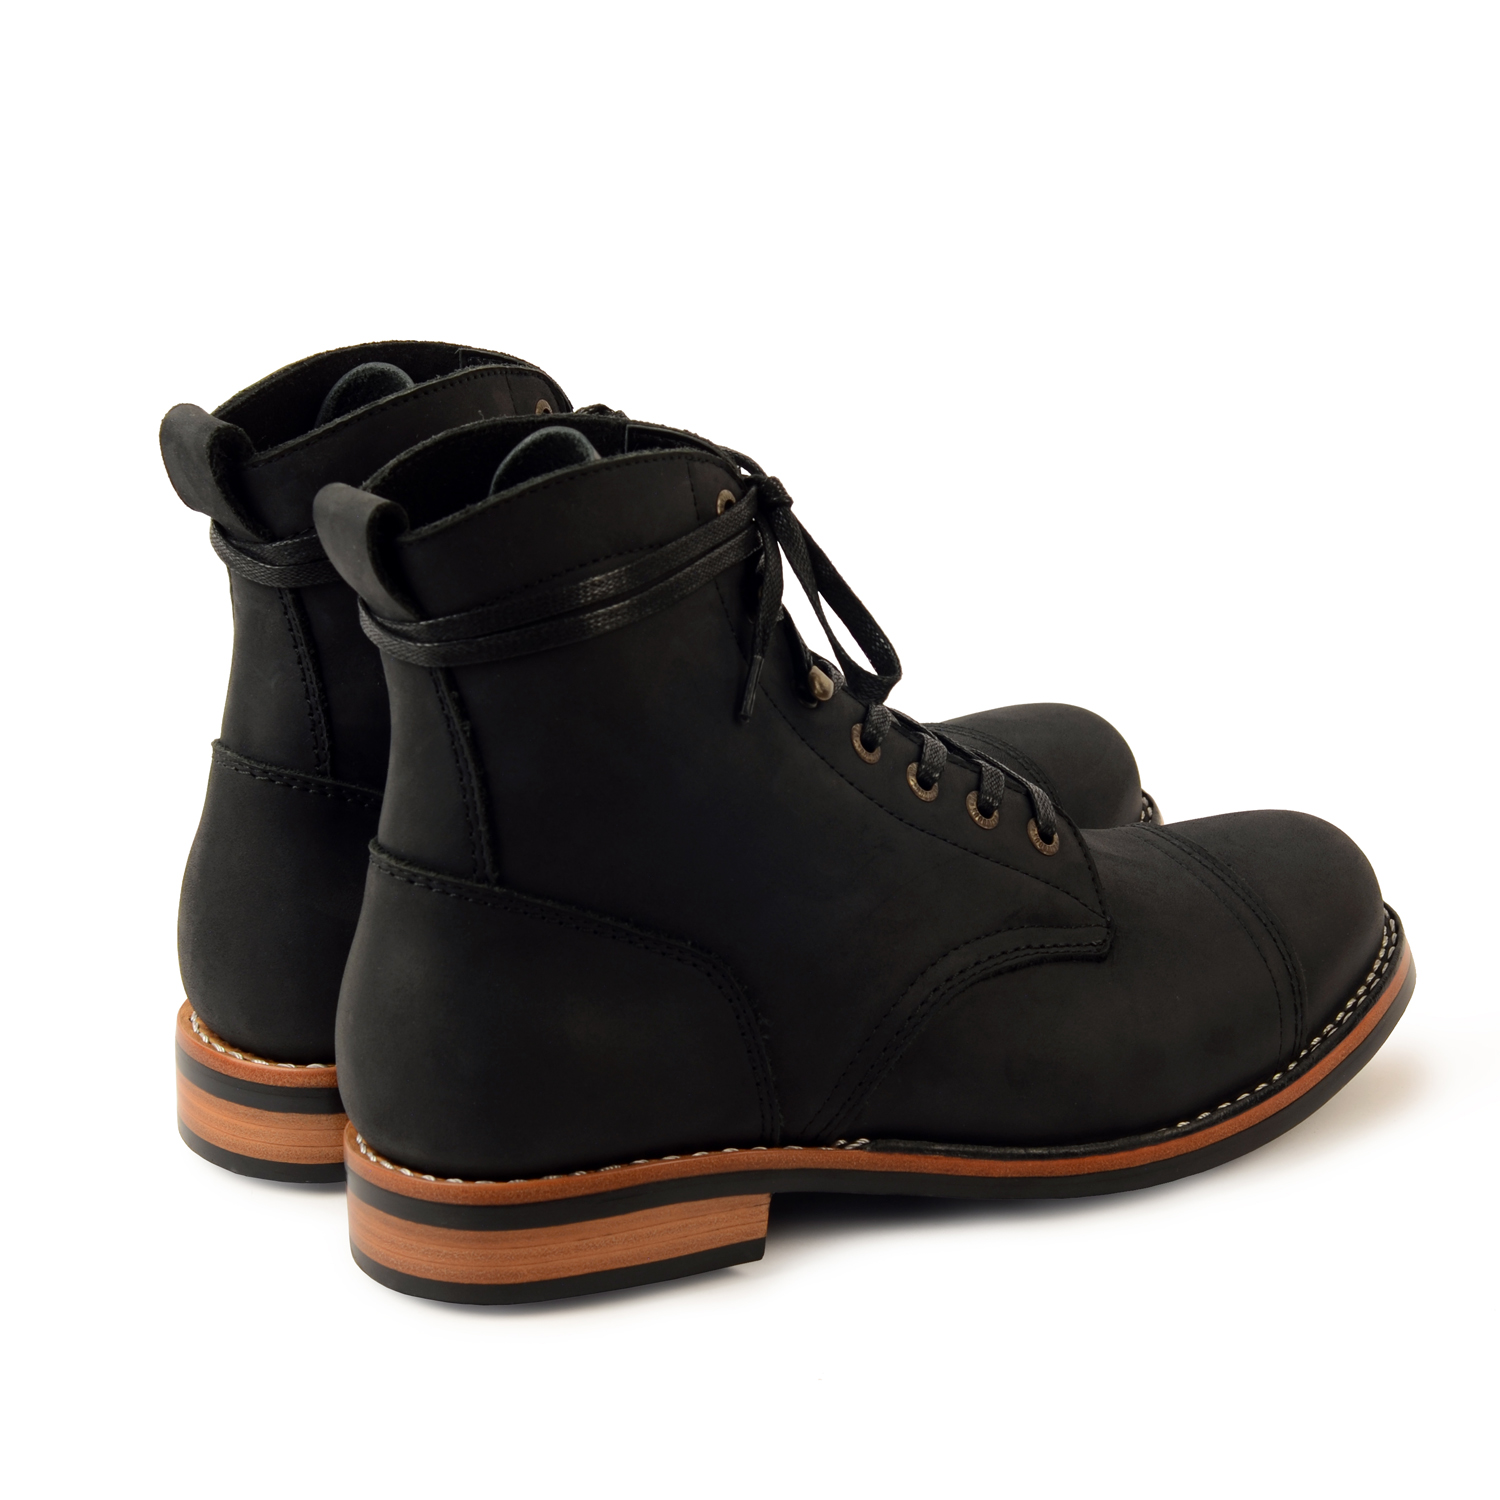 RAVEN - Veldtschoen Leather Boots